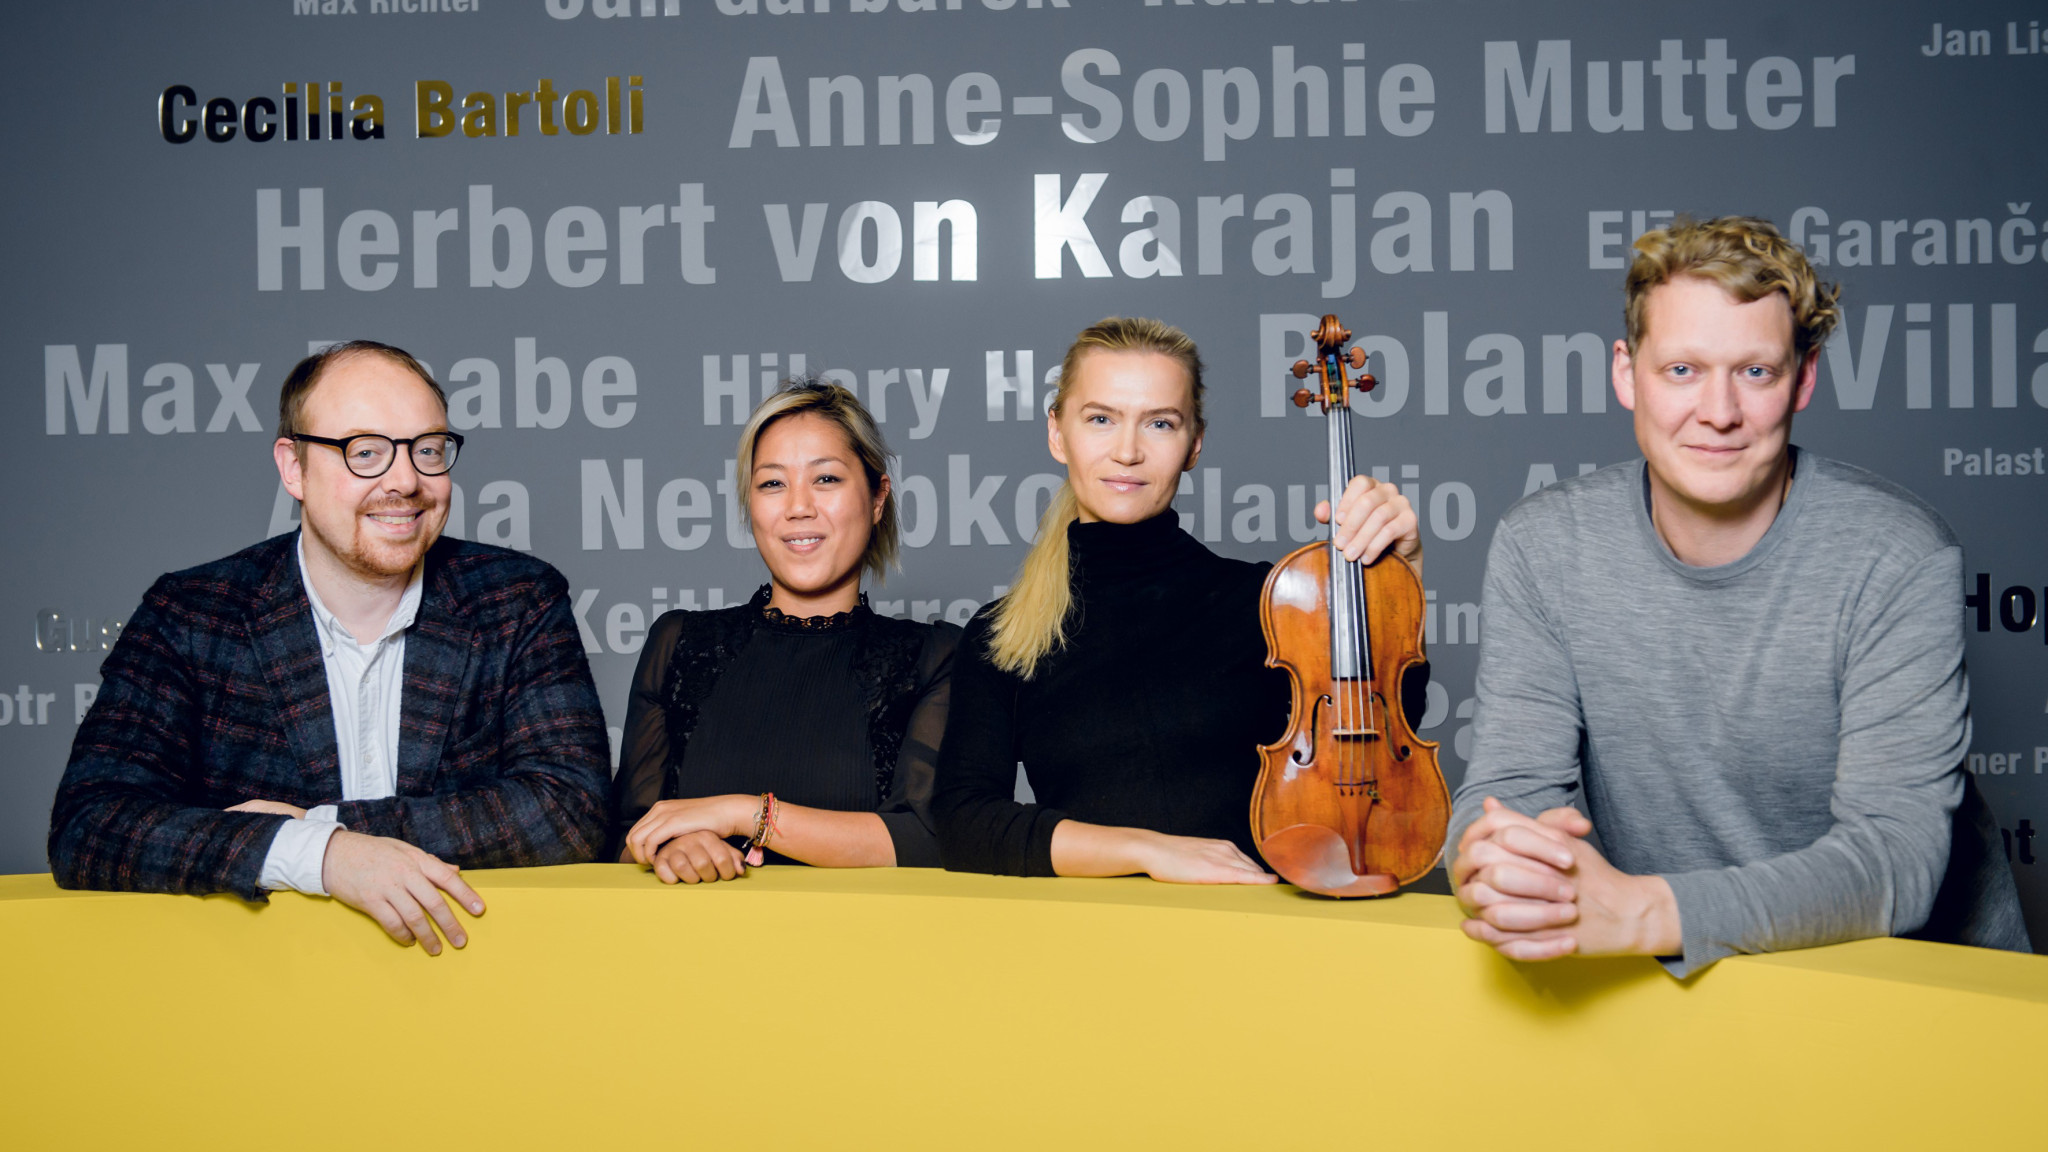 Mari Samuelsen ist neue Exklusivkünstlerin bei der Deutschen Grammophon